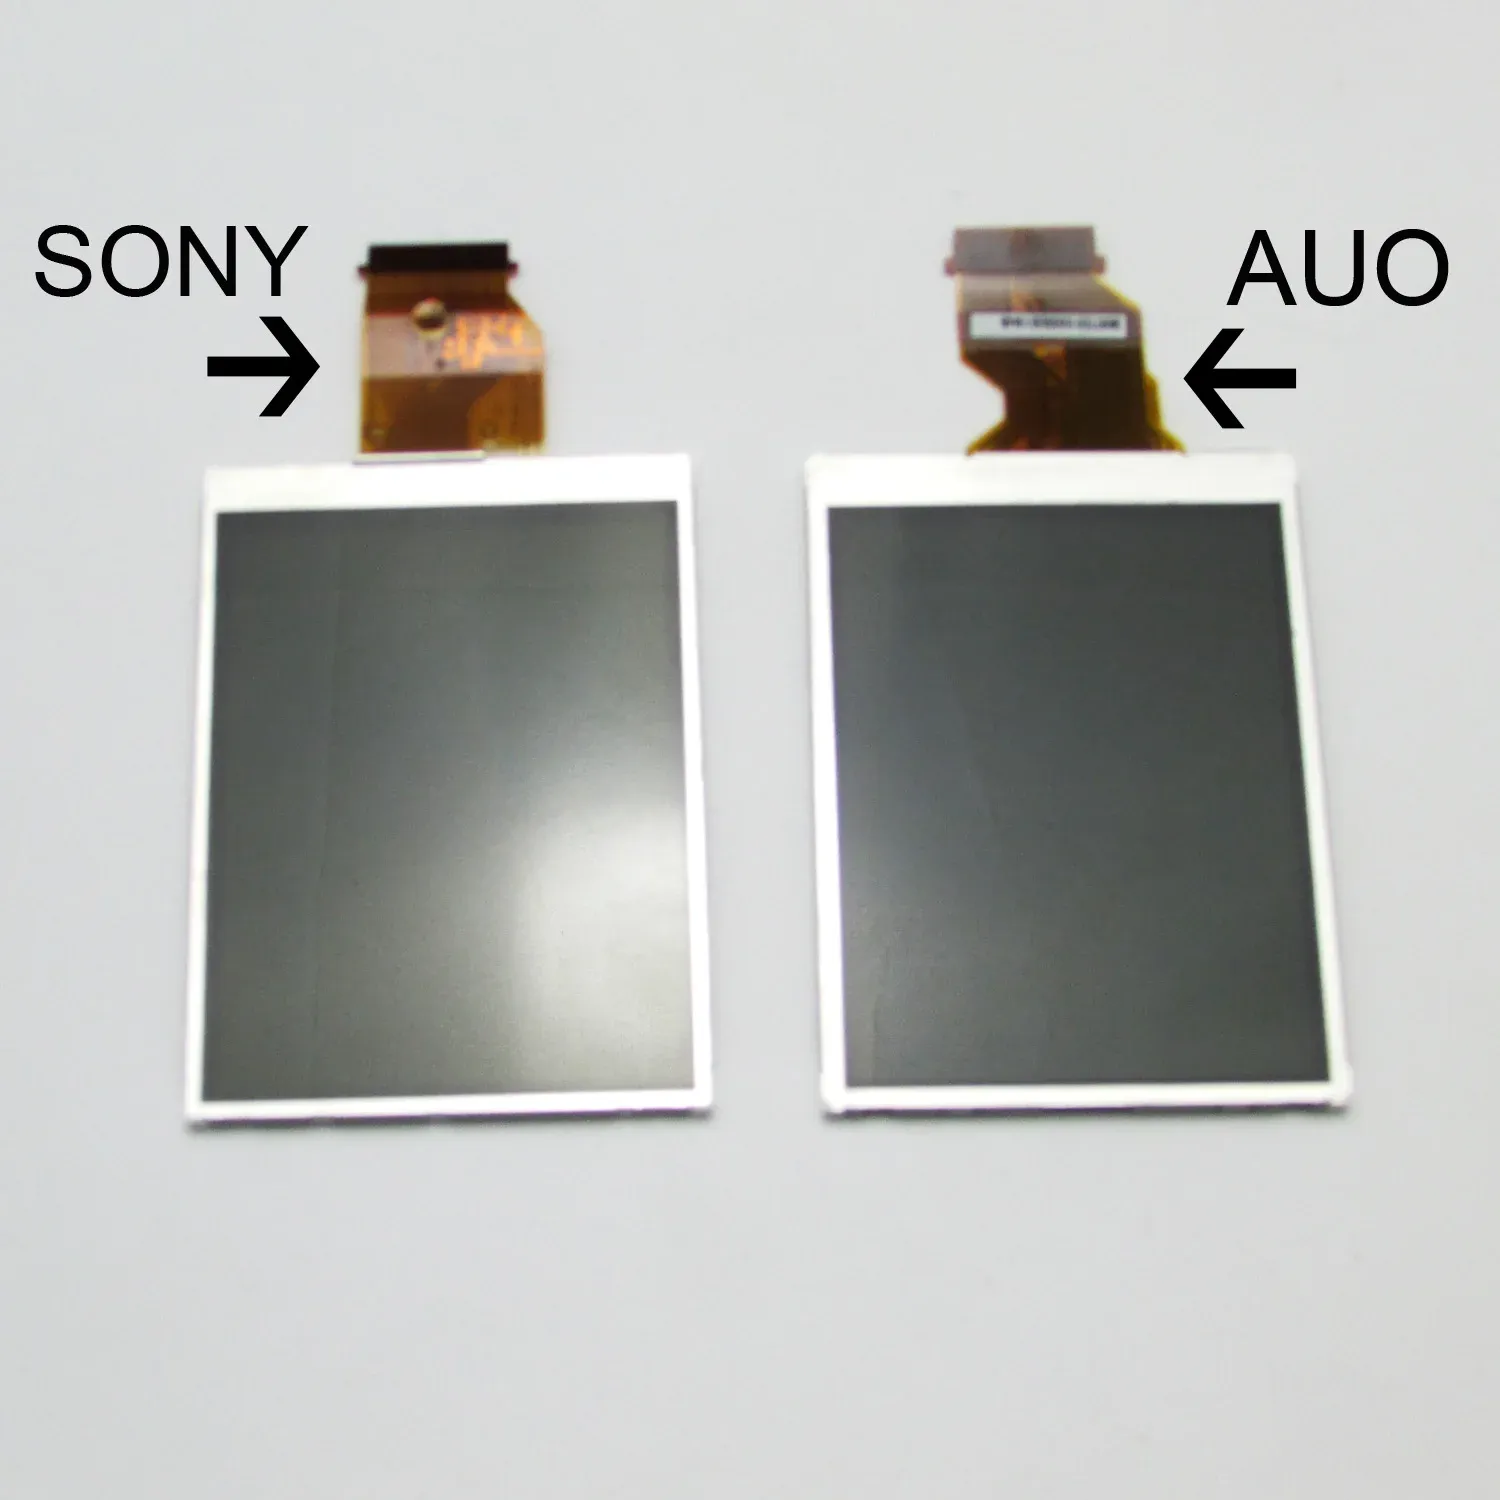 Zubehör Neues LCD -Bildschirmanzeige für Sony Alpha DSLR A200 A300 A350 Kamera (Auo /Sony -Typ)+Hintergrundbeleuchtung